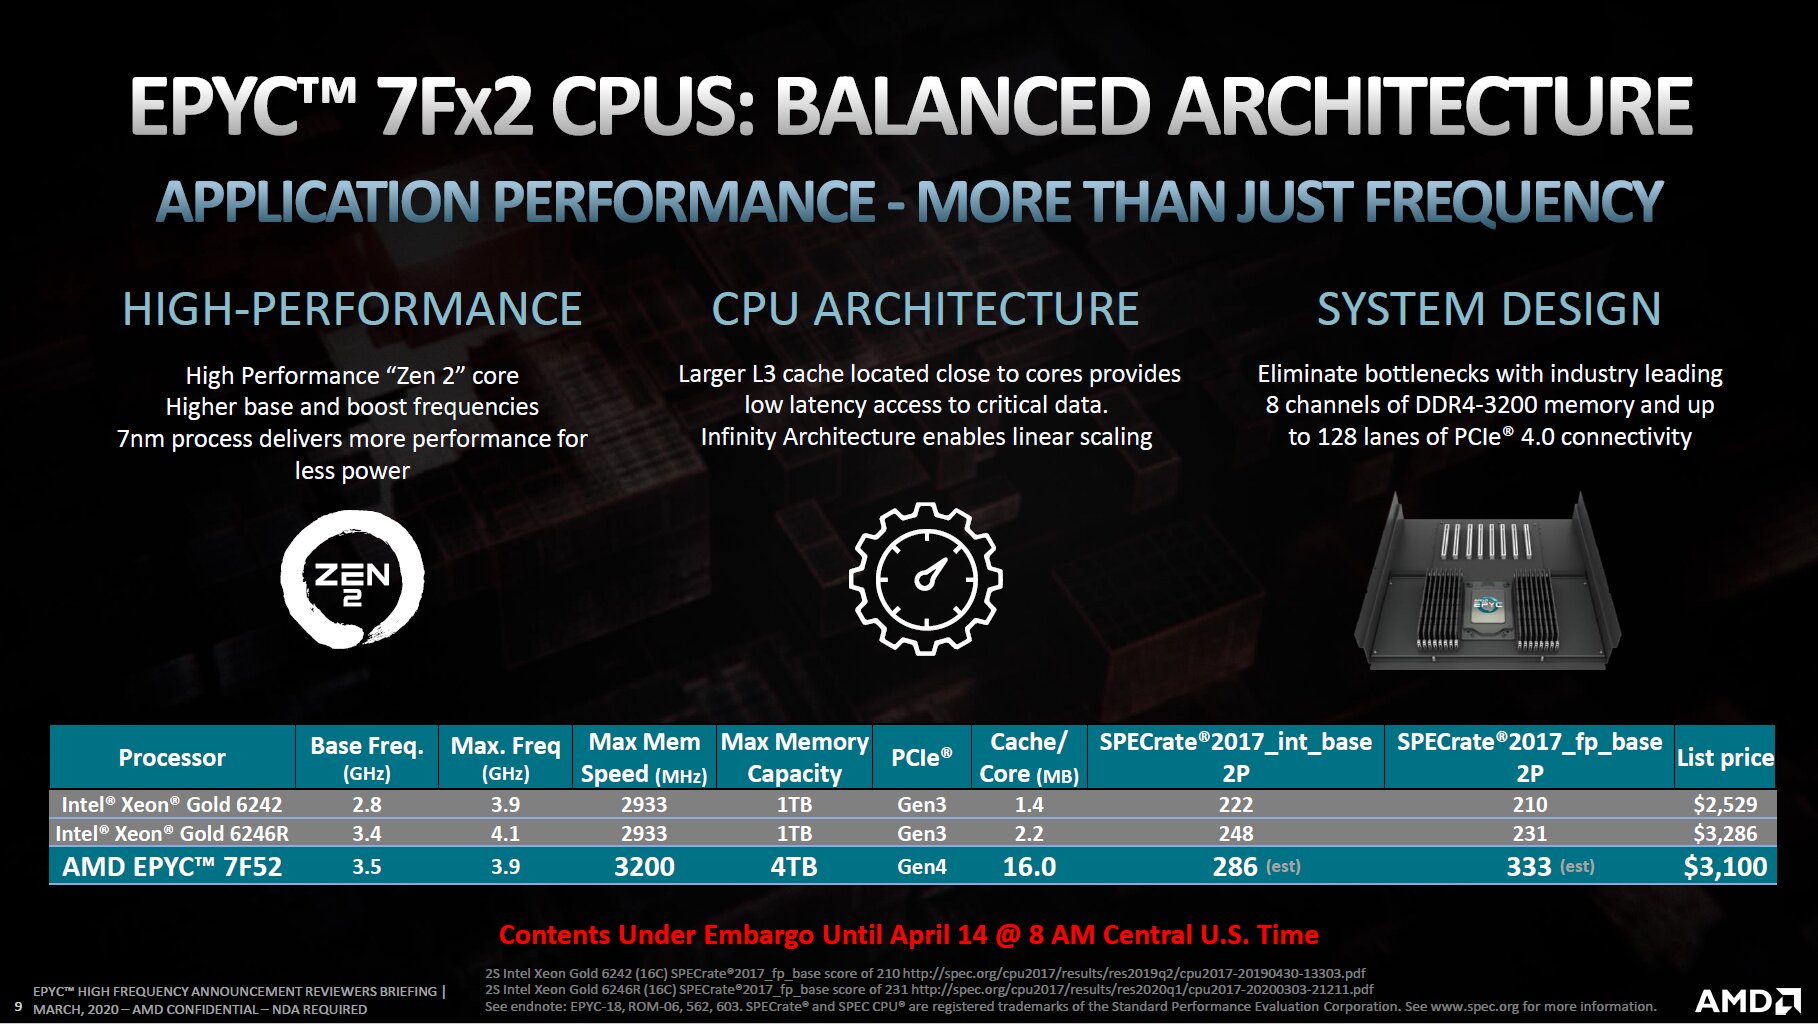 AMD Epyc 7Fx2